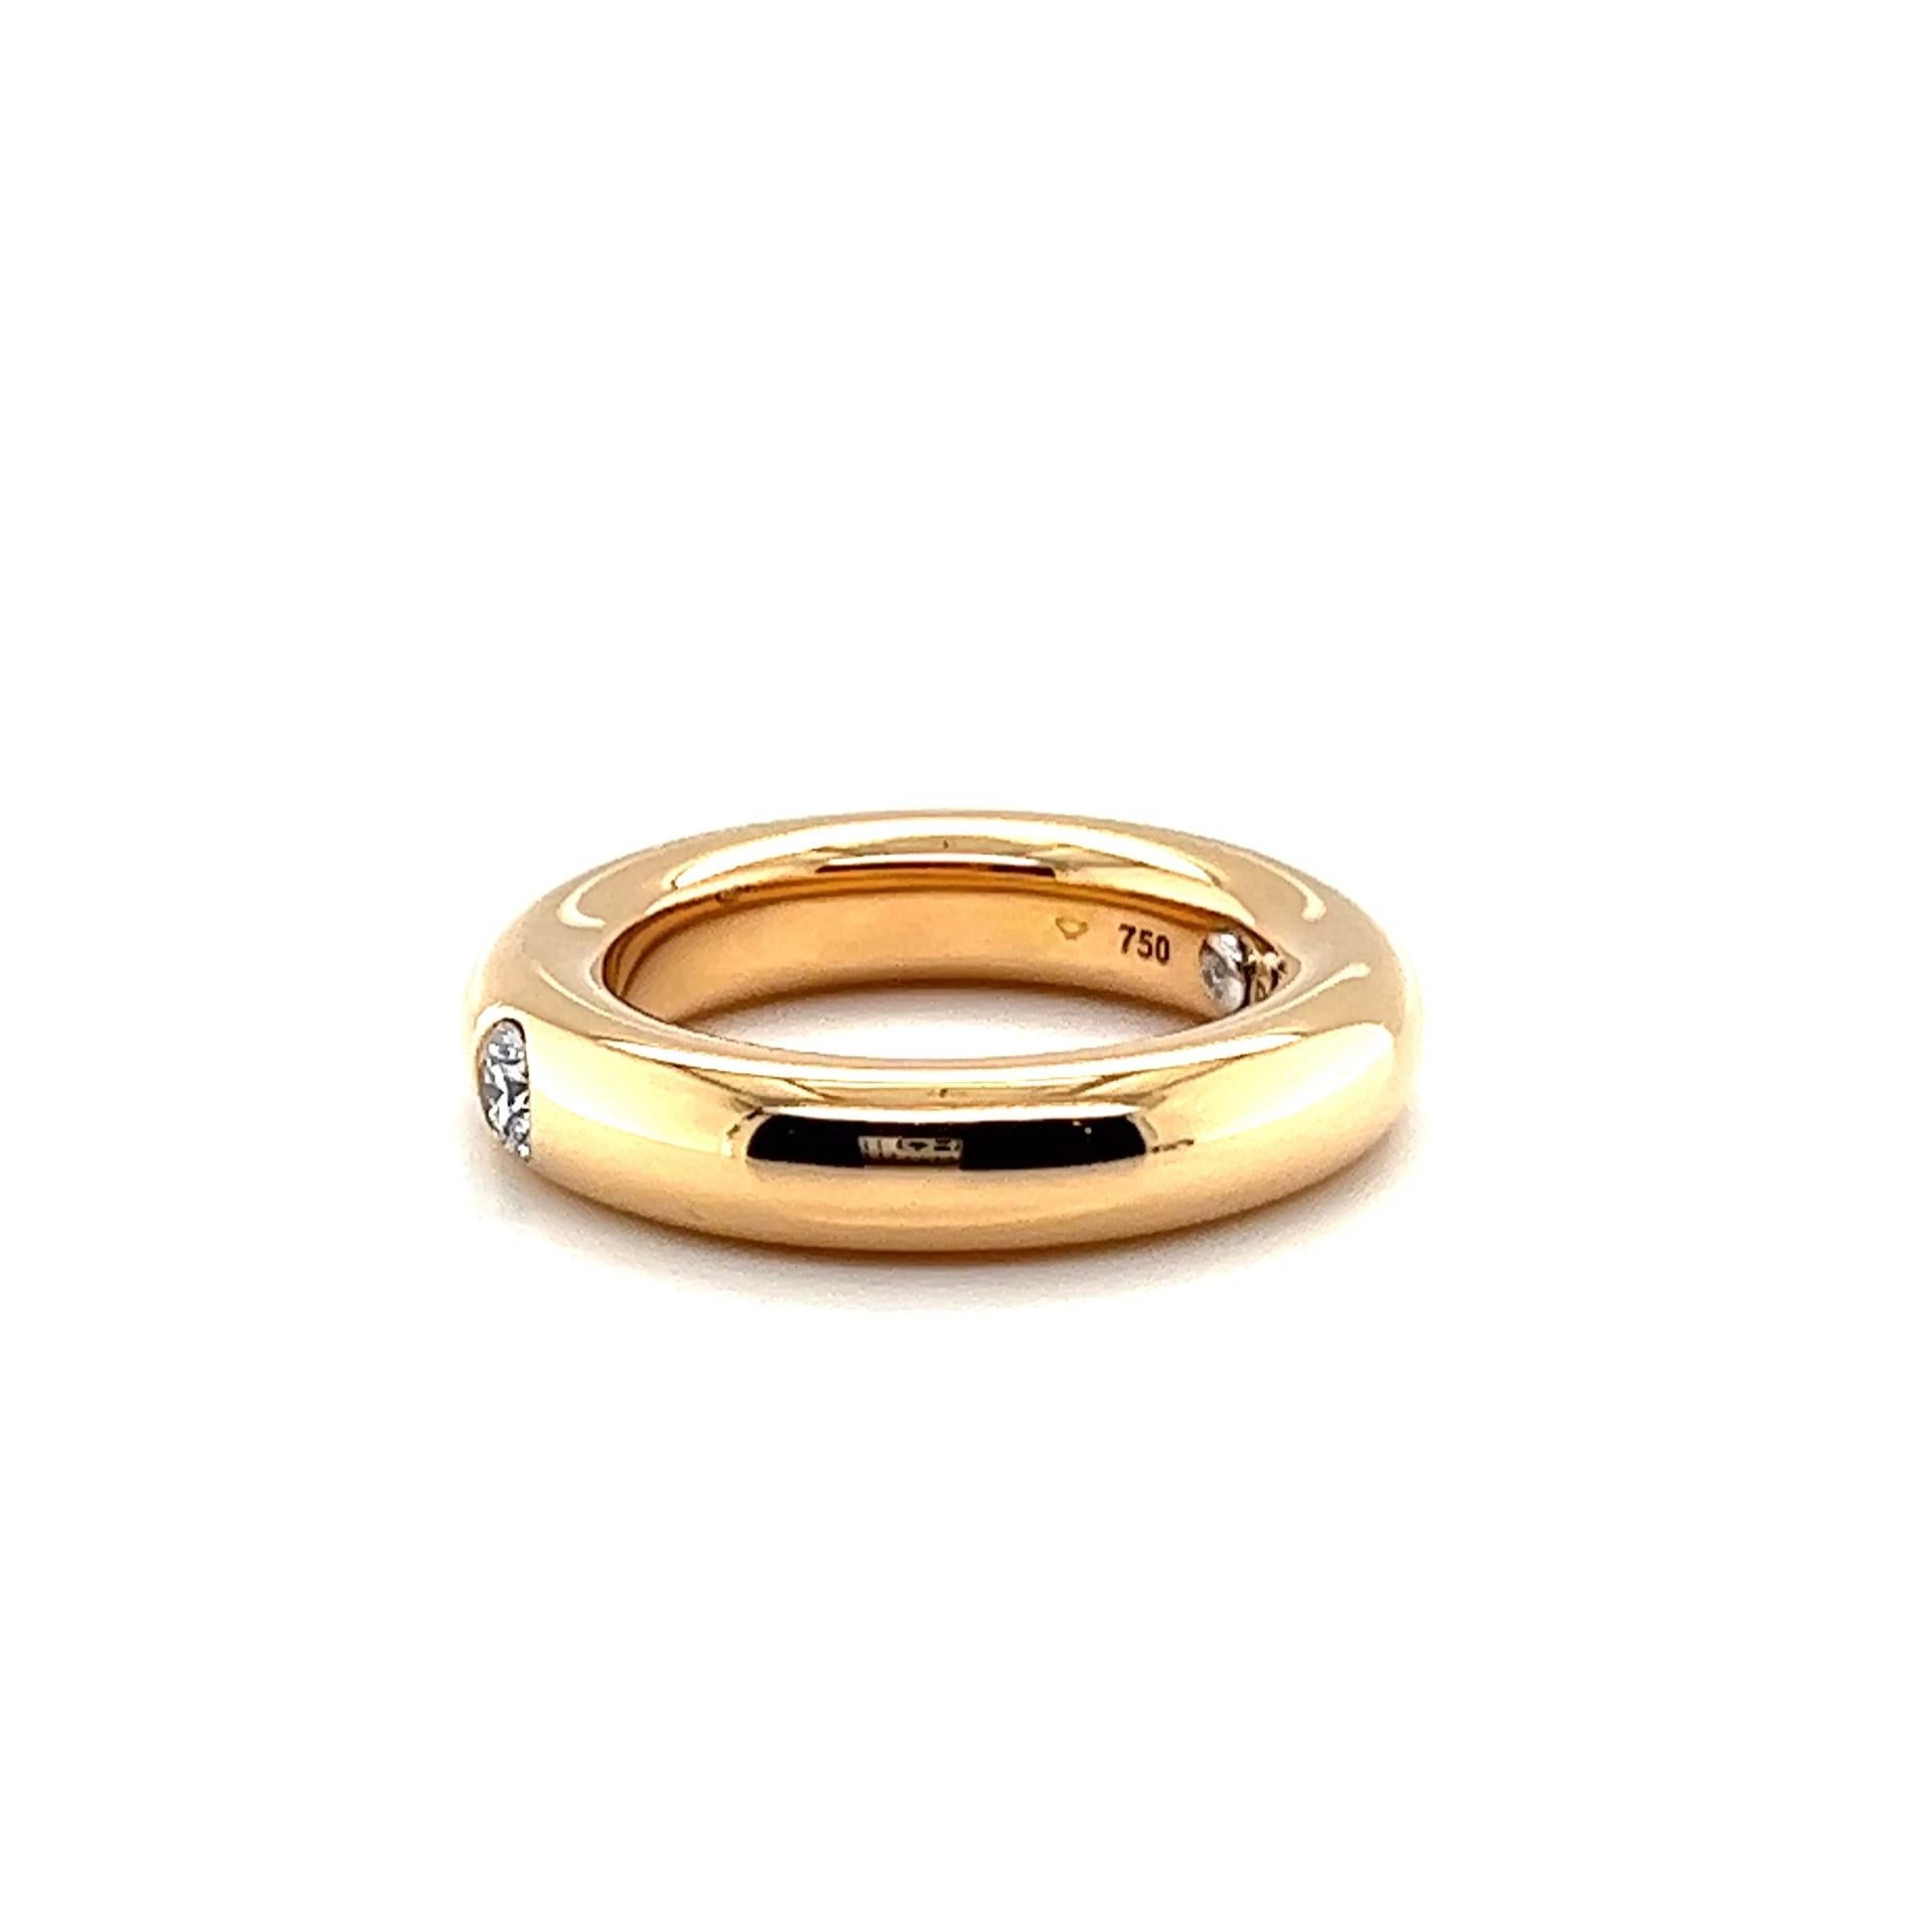 Ein eleganter Bandring mit Diamanten aus Rotgold vom deutschen Juwelier Noor. Die Marke wird für ihre außergewöhnliche Kunstfertigkeit und ihr zeitloses Design gefeiert. Ihre einzigartige Anziehungskraft verdanken sie sorgfältig beschafften, ethisch